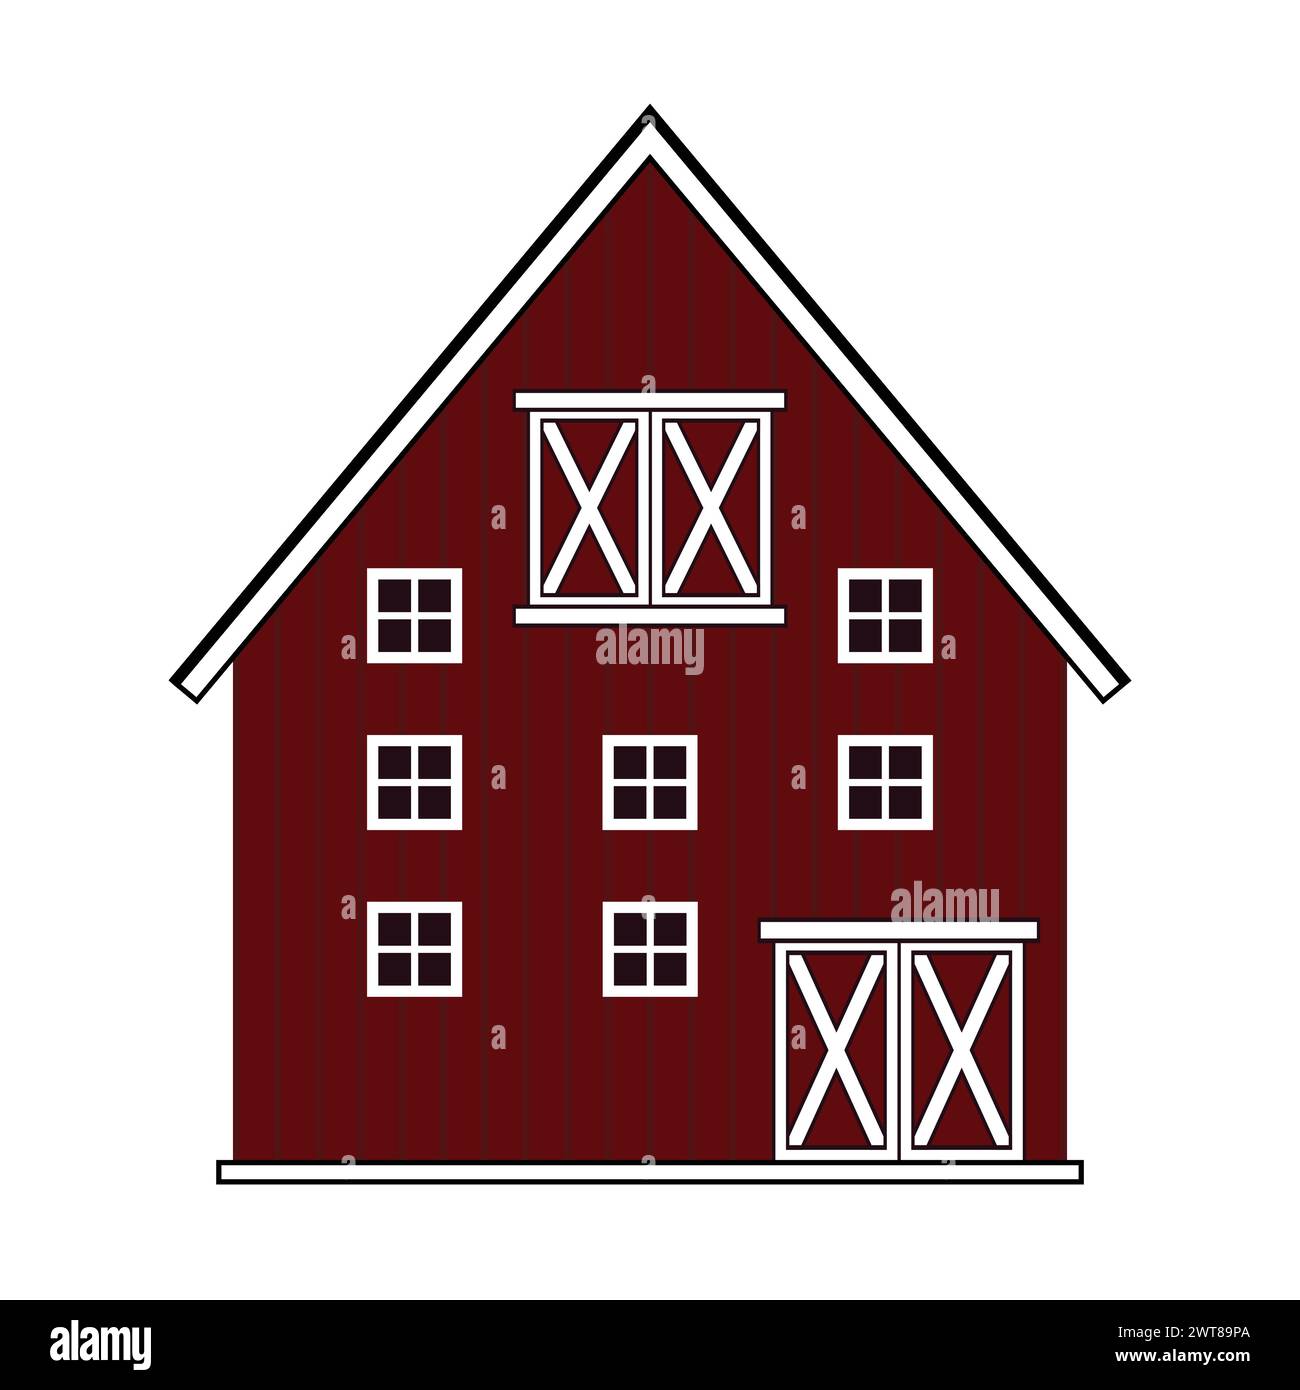 Rote Holzscheune mit Fenstern und Türen, mehrere Etagen. Isolierte Vektorillustration auf weißem Hintergrund Stock Vektor